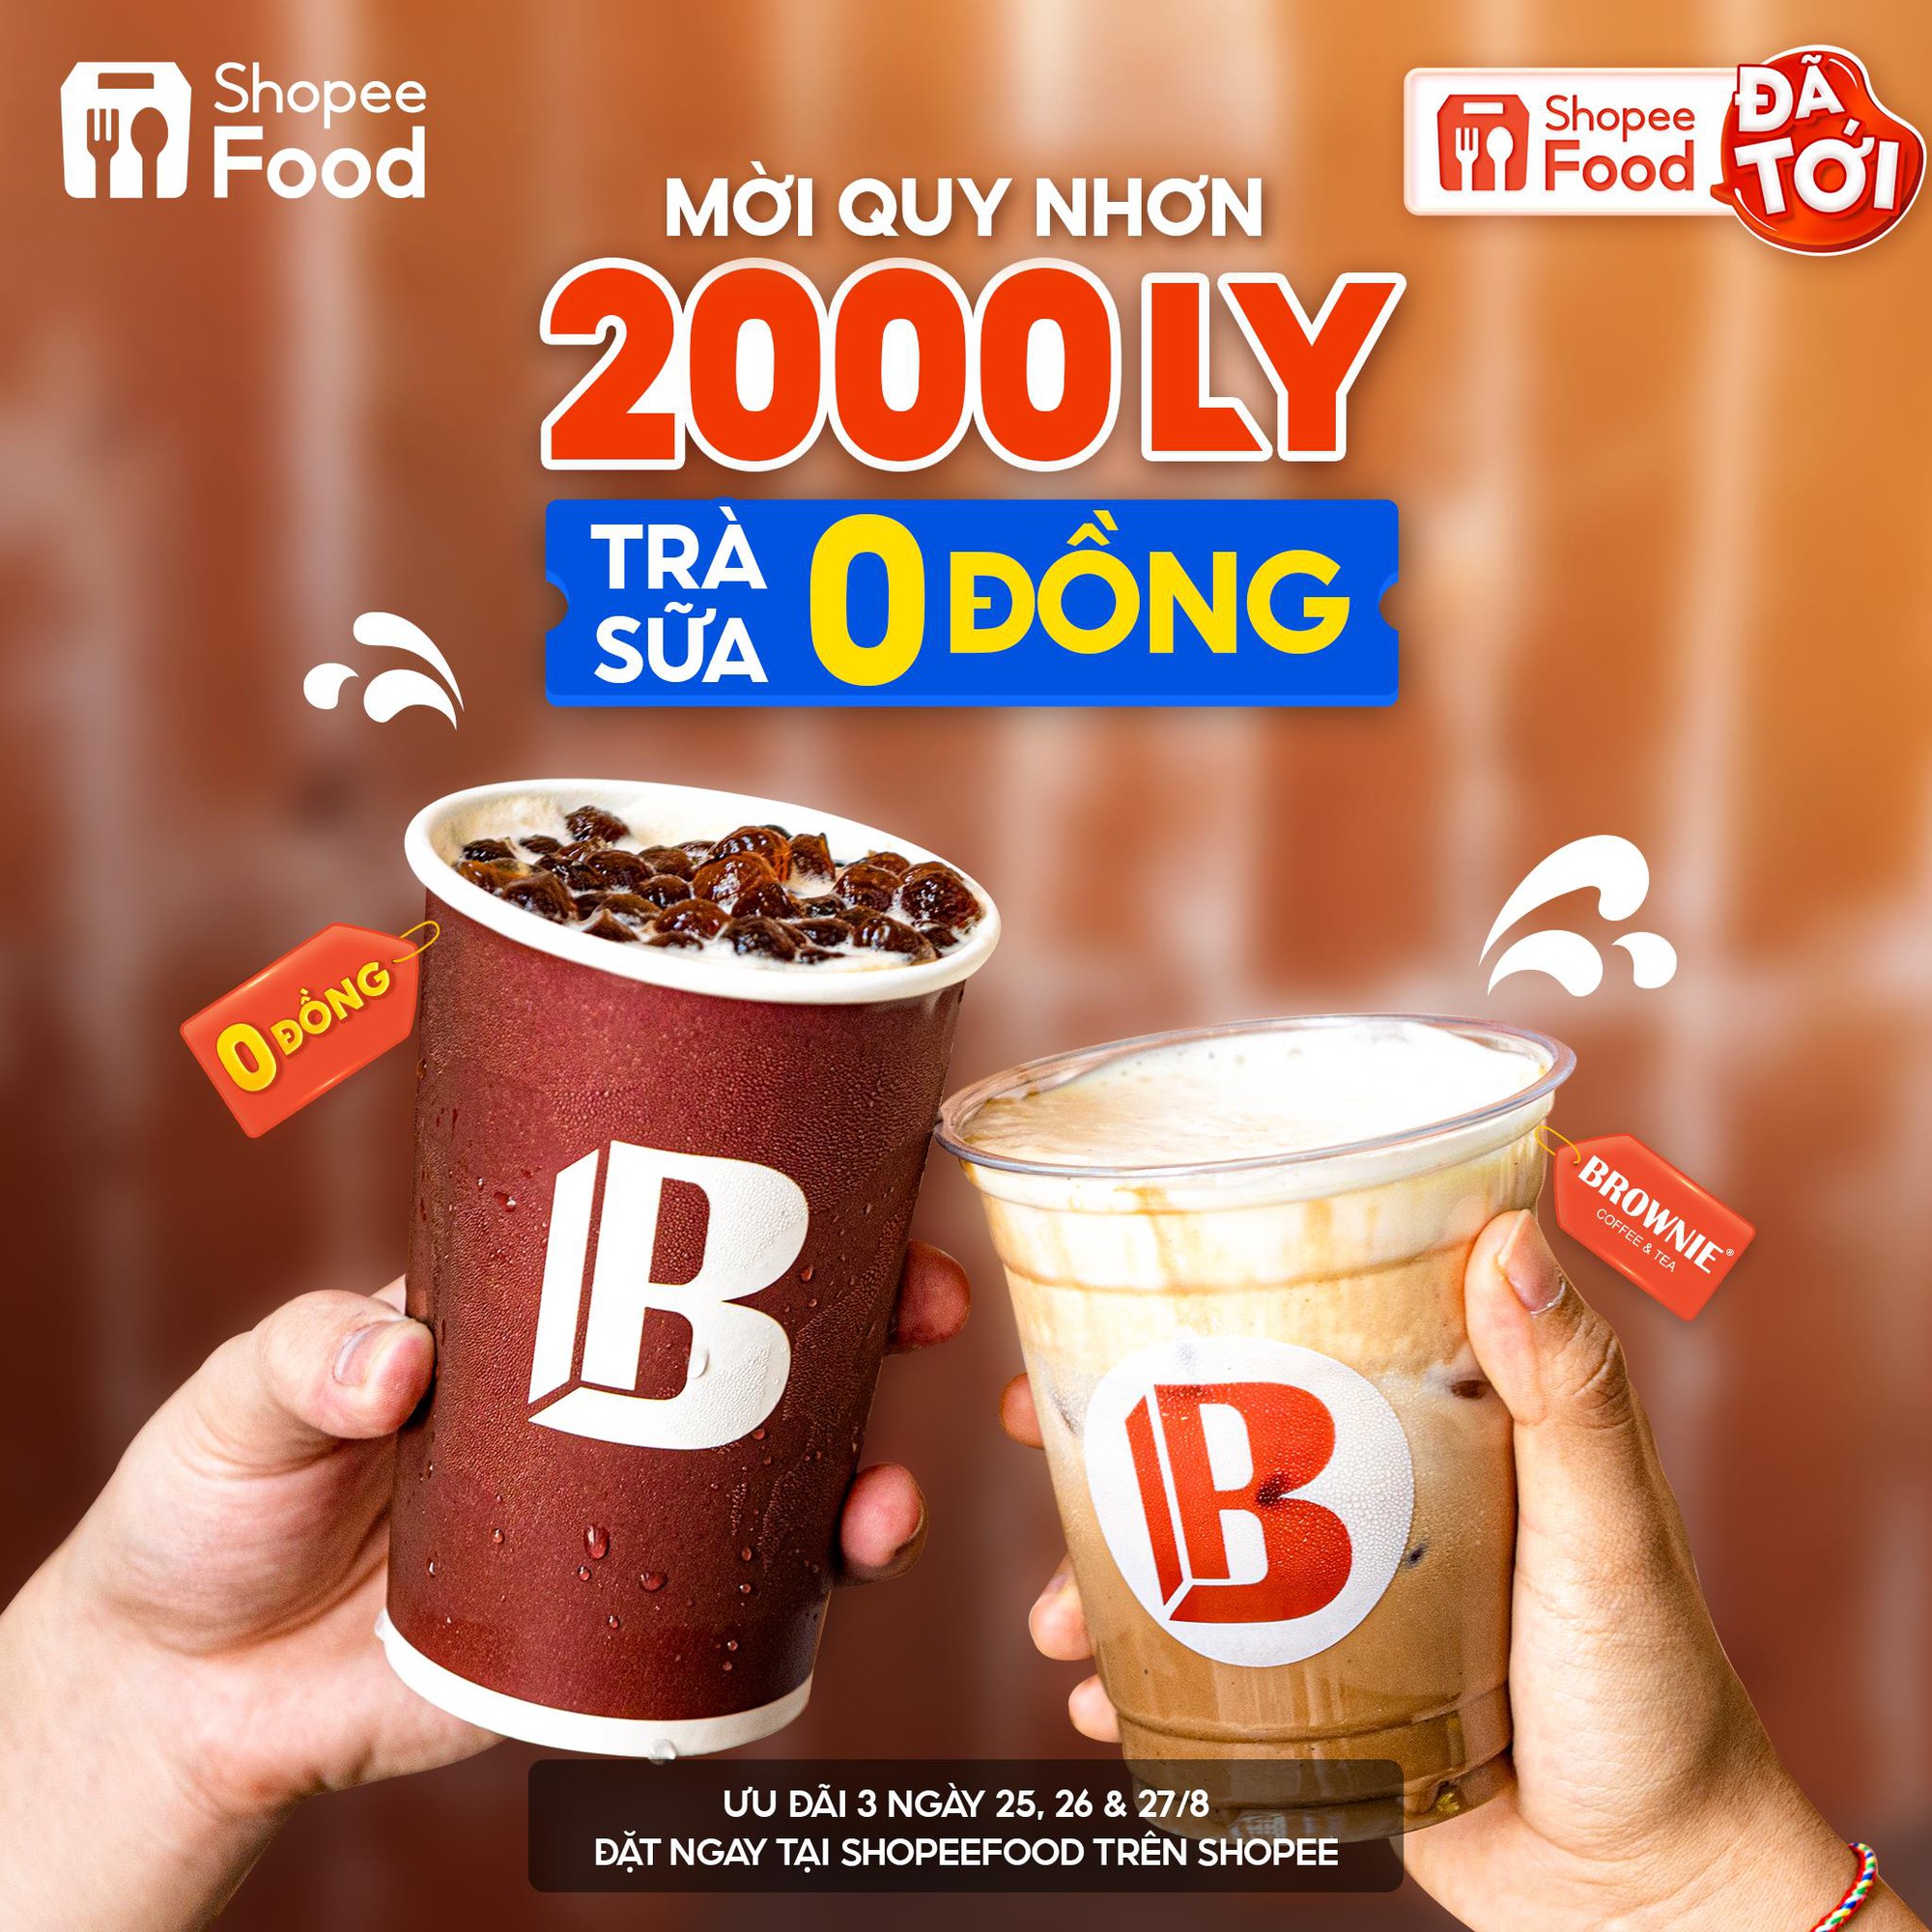 ShopeeFood chơi lớn, khao mỗi thành phố 2.000 ly trà sữa 0 đồng cho màn chào sân tại Phan Thiết, Quy Nhơn - Ảnh 2.